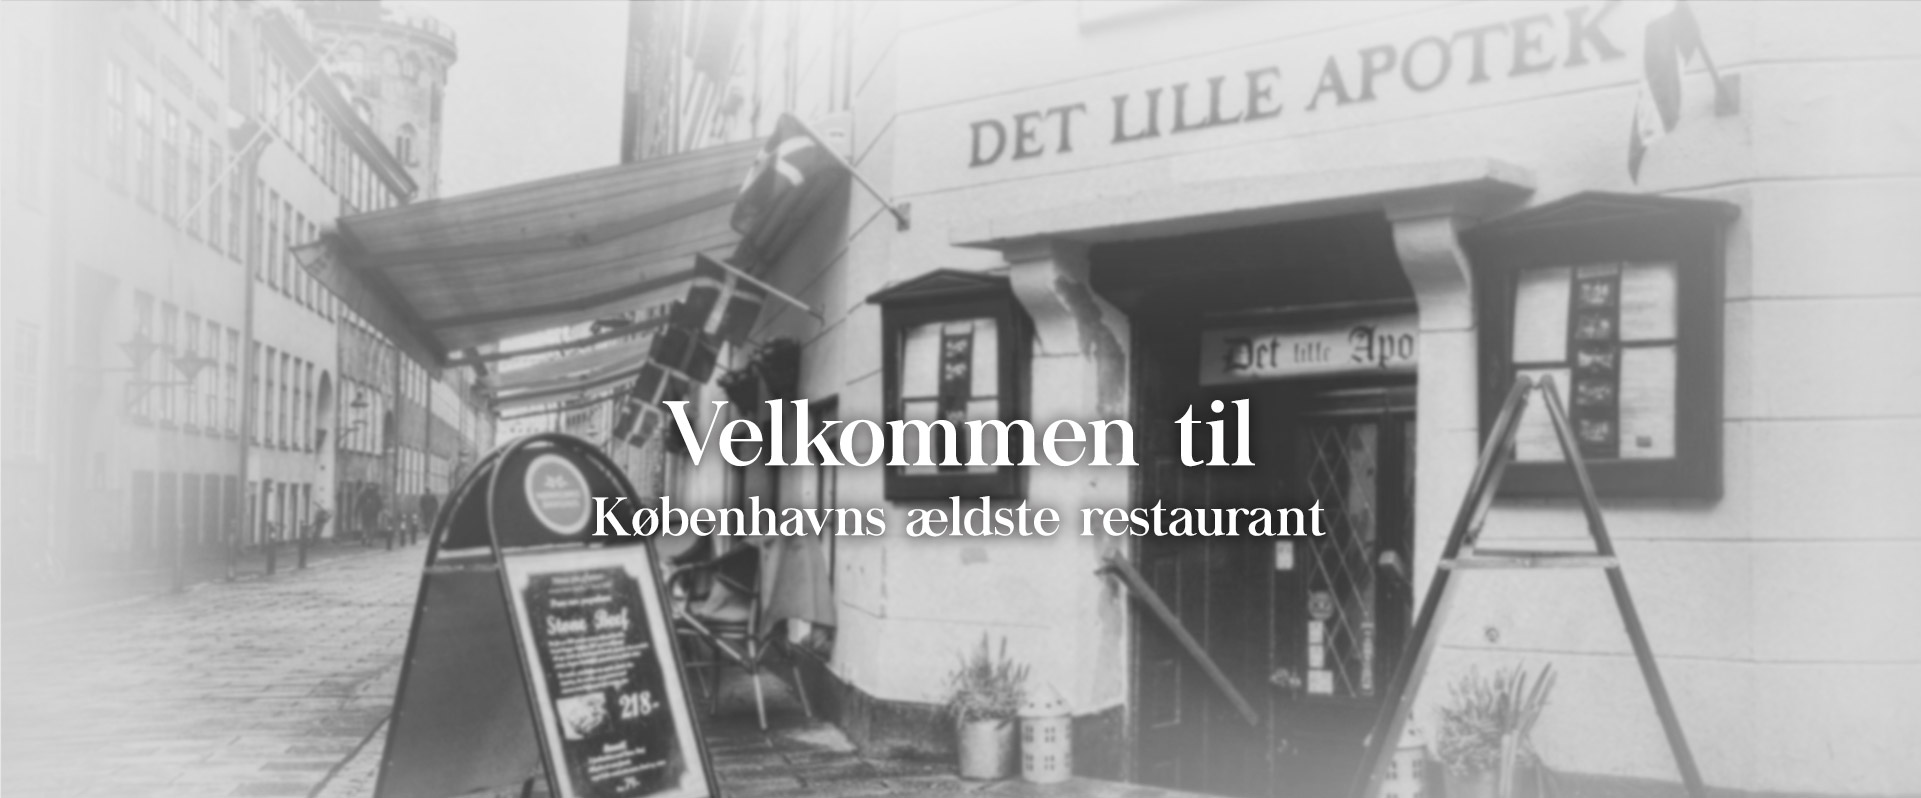 Velkommen til Københavns ældste restaurant